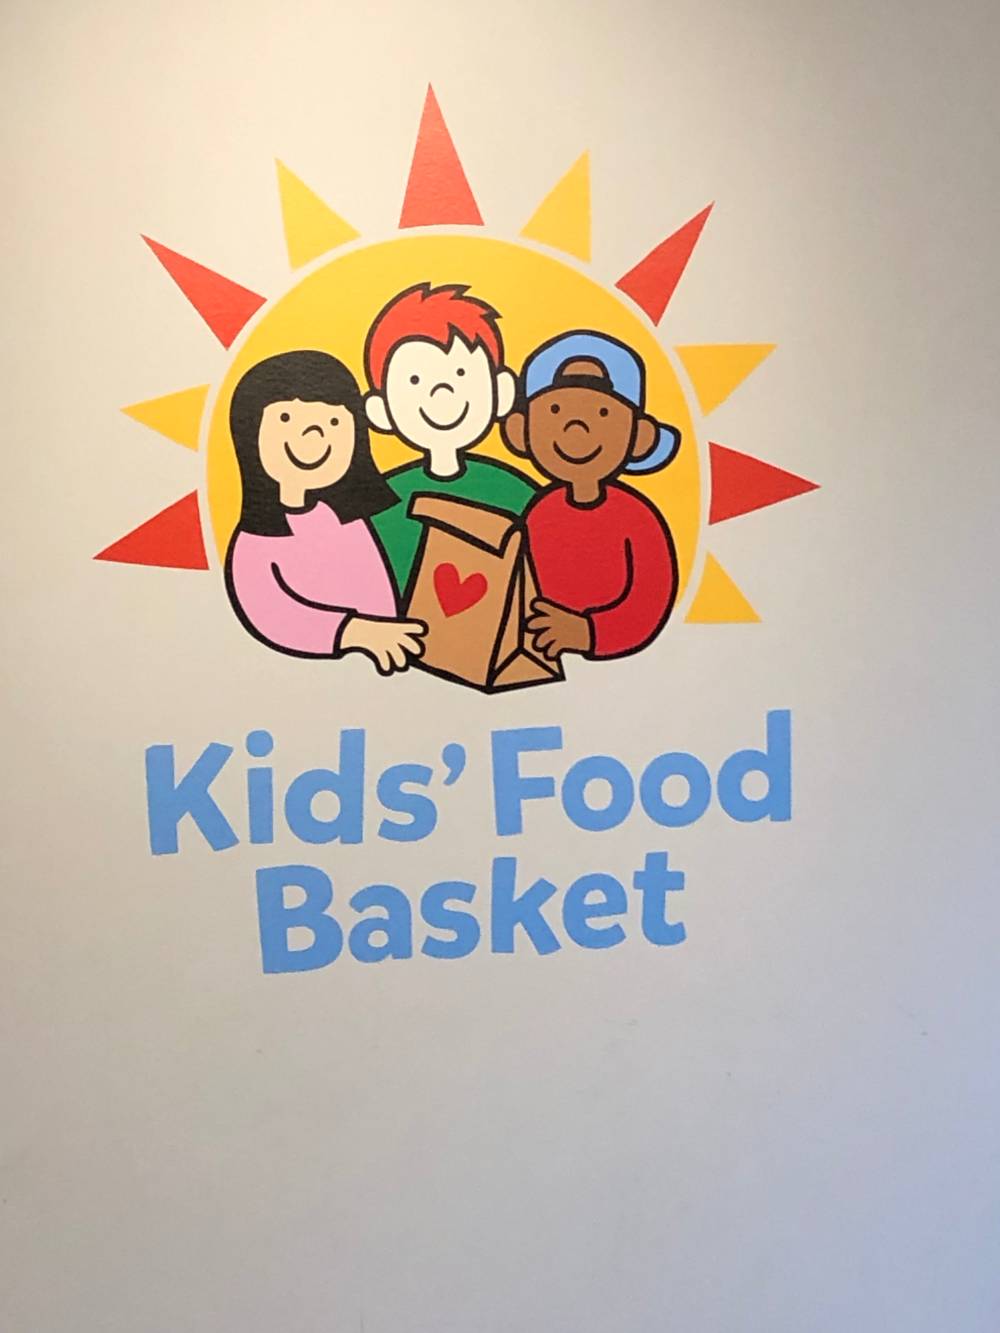 Kids' Food Basket logo.